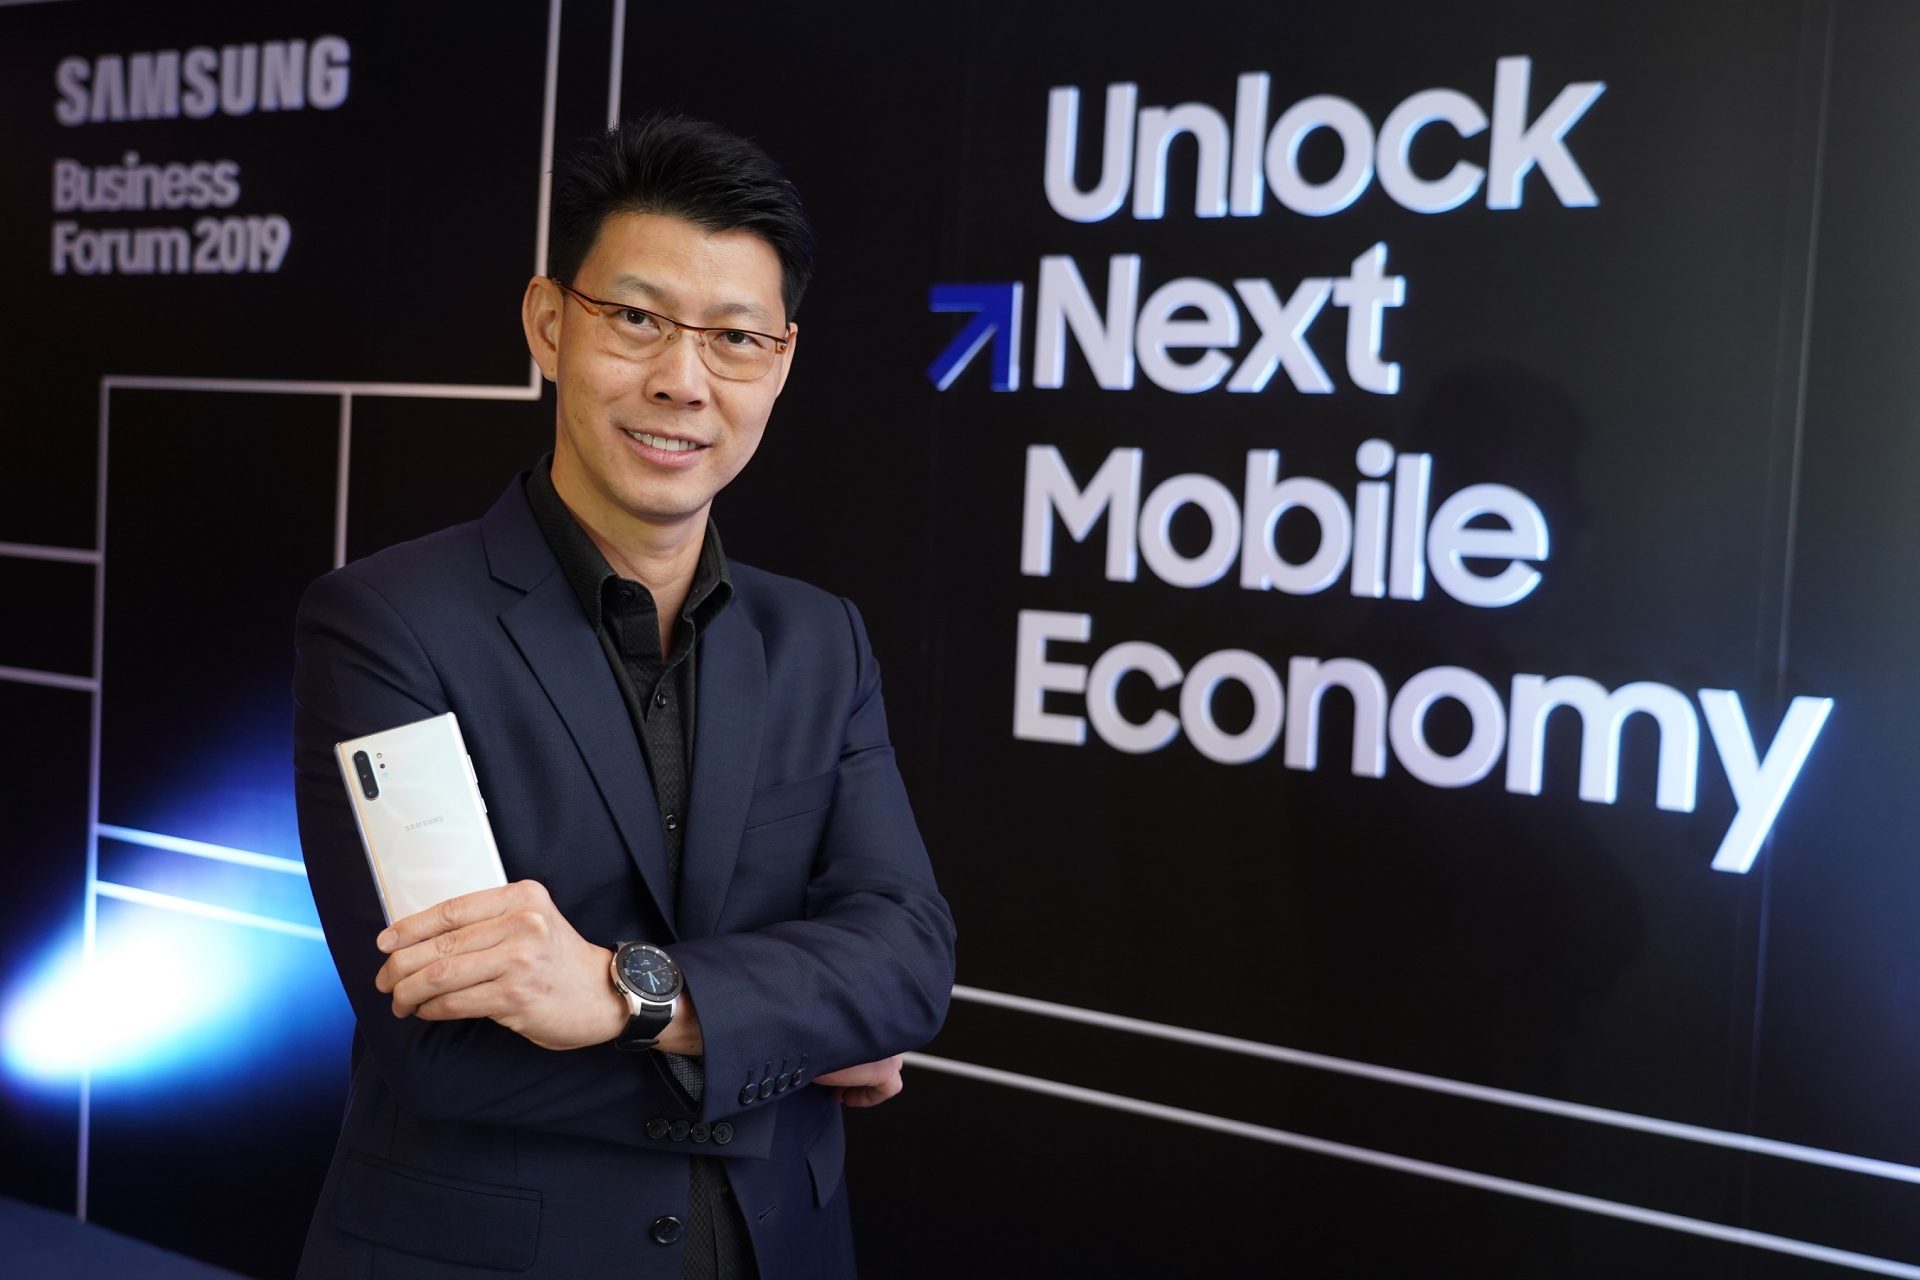 ซัมซุงปลดล็อกภาคธุรกิจไทยสู่ Next Mobile Economy  ส่งผลิตภัณฑ์และโซลูชันครบวงจรเพื่อองค์กรทุกขนาด